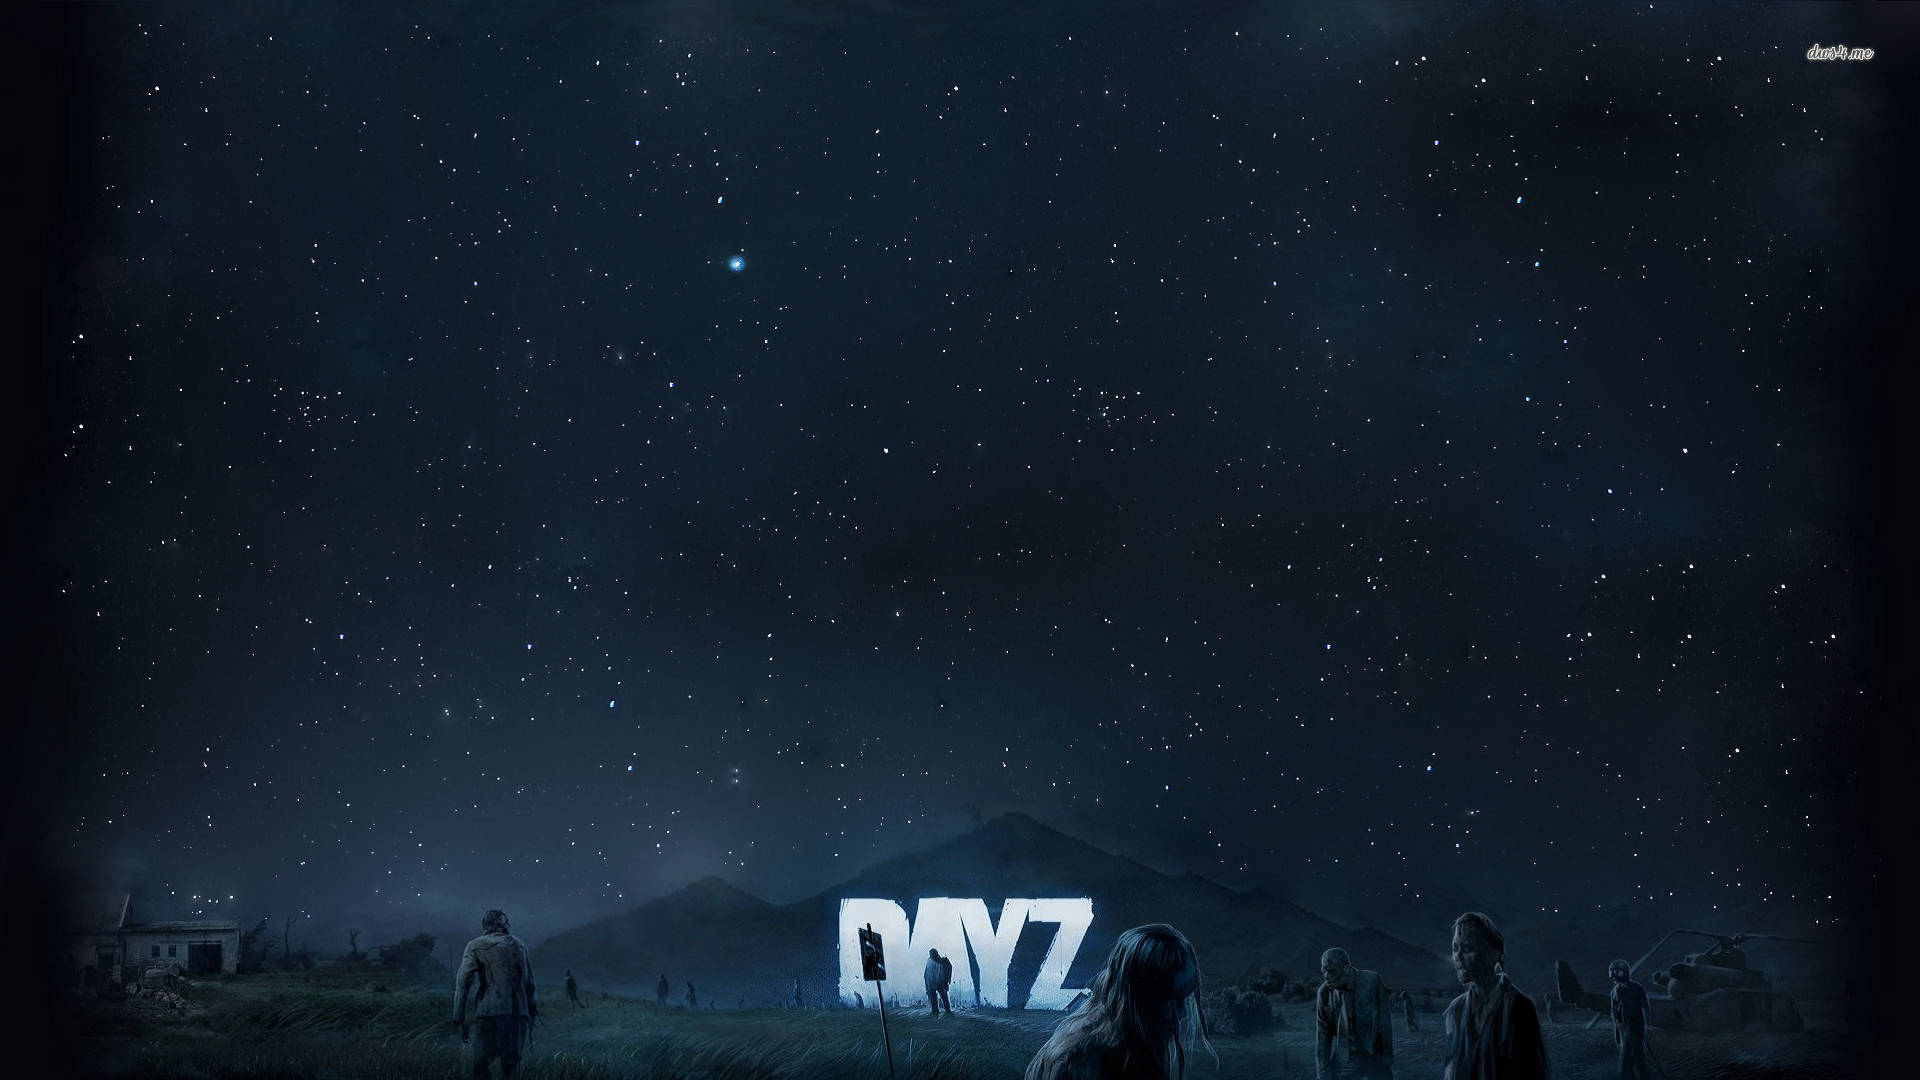 Dayz Starry Night Sky